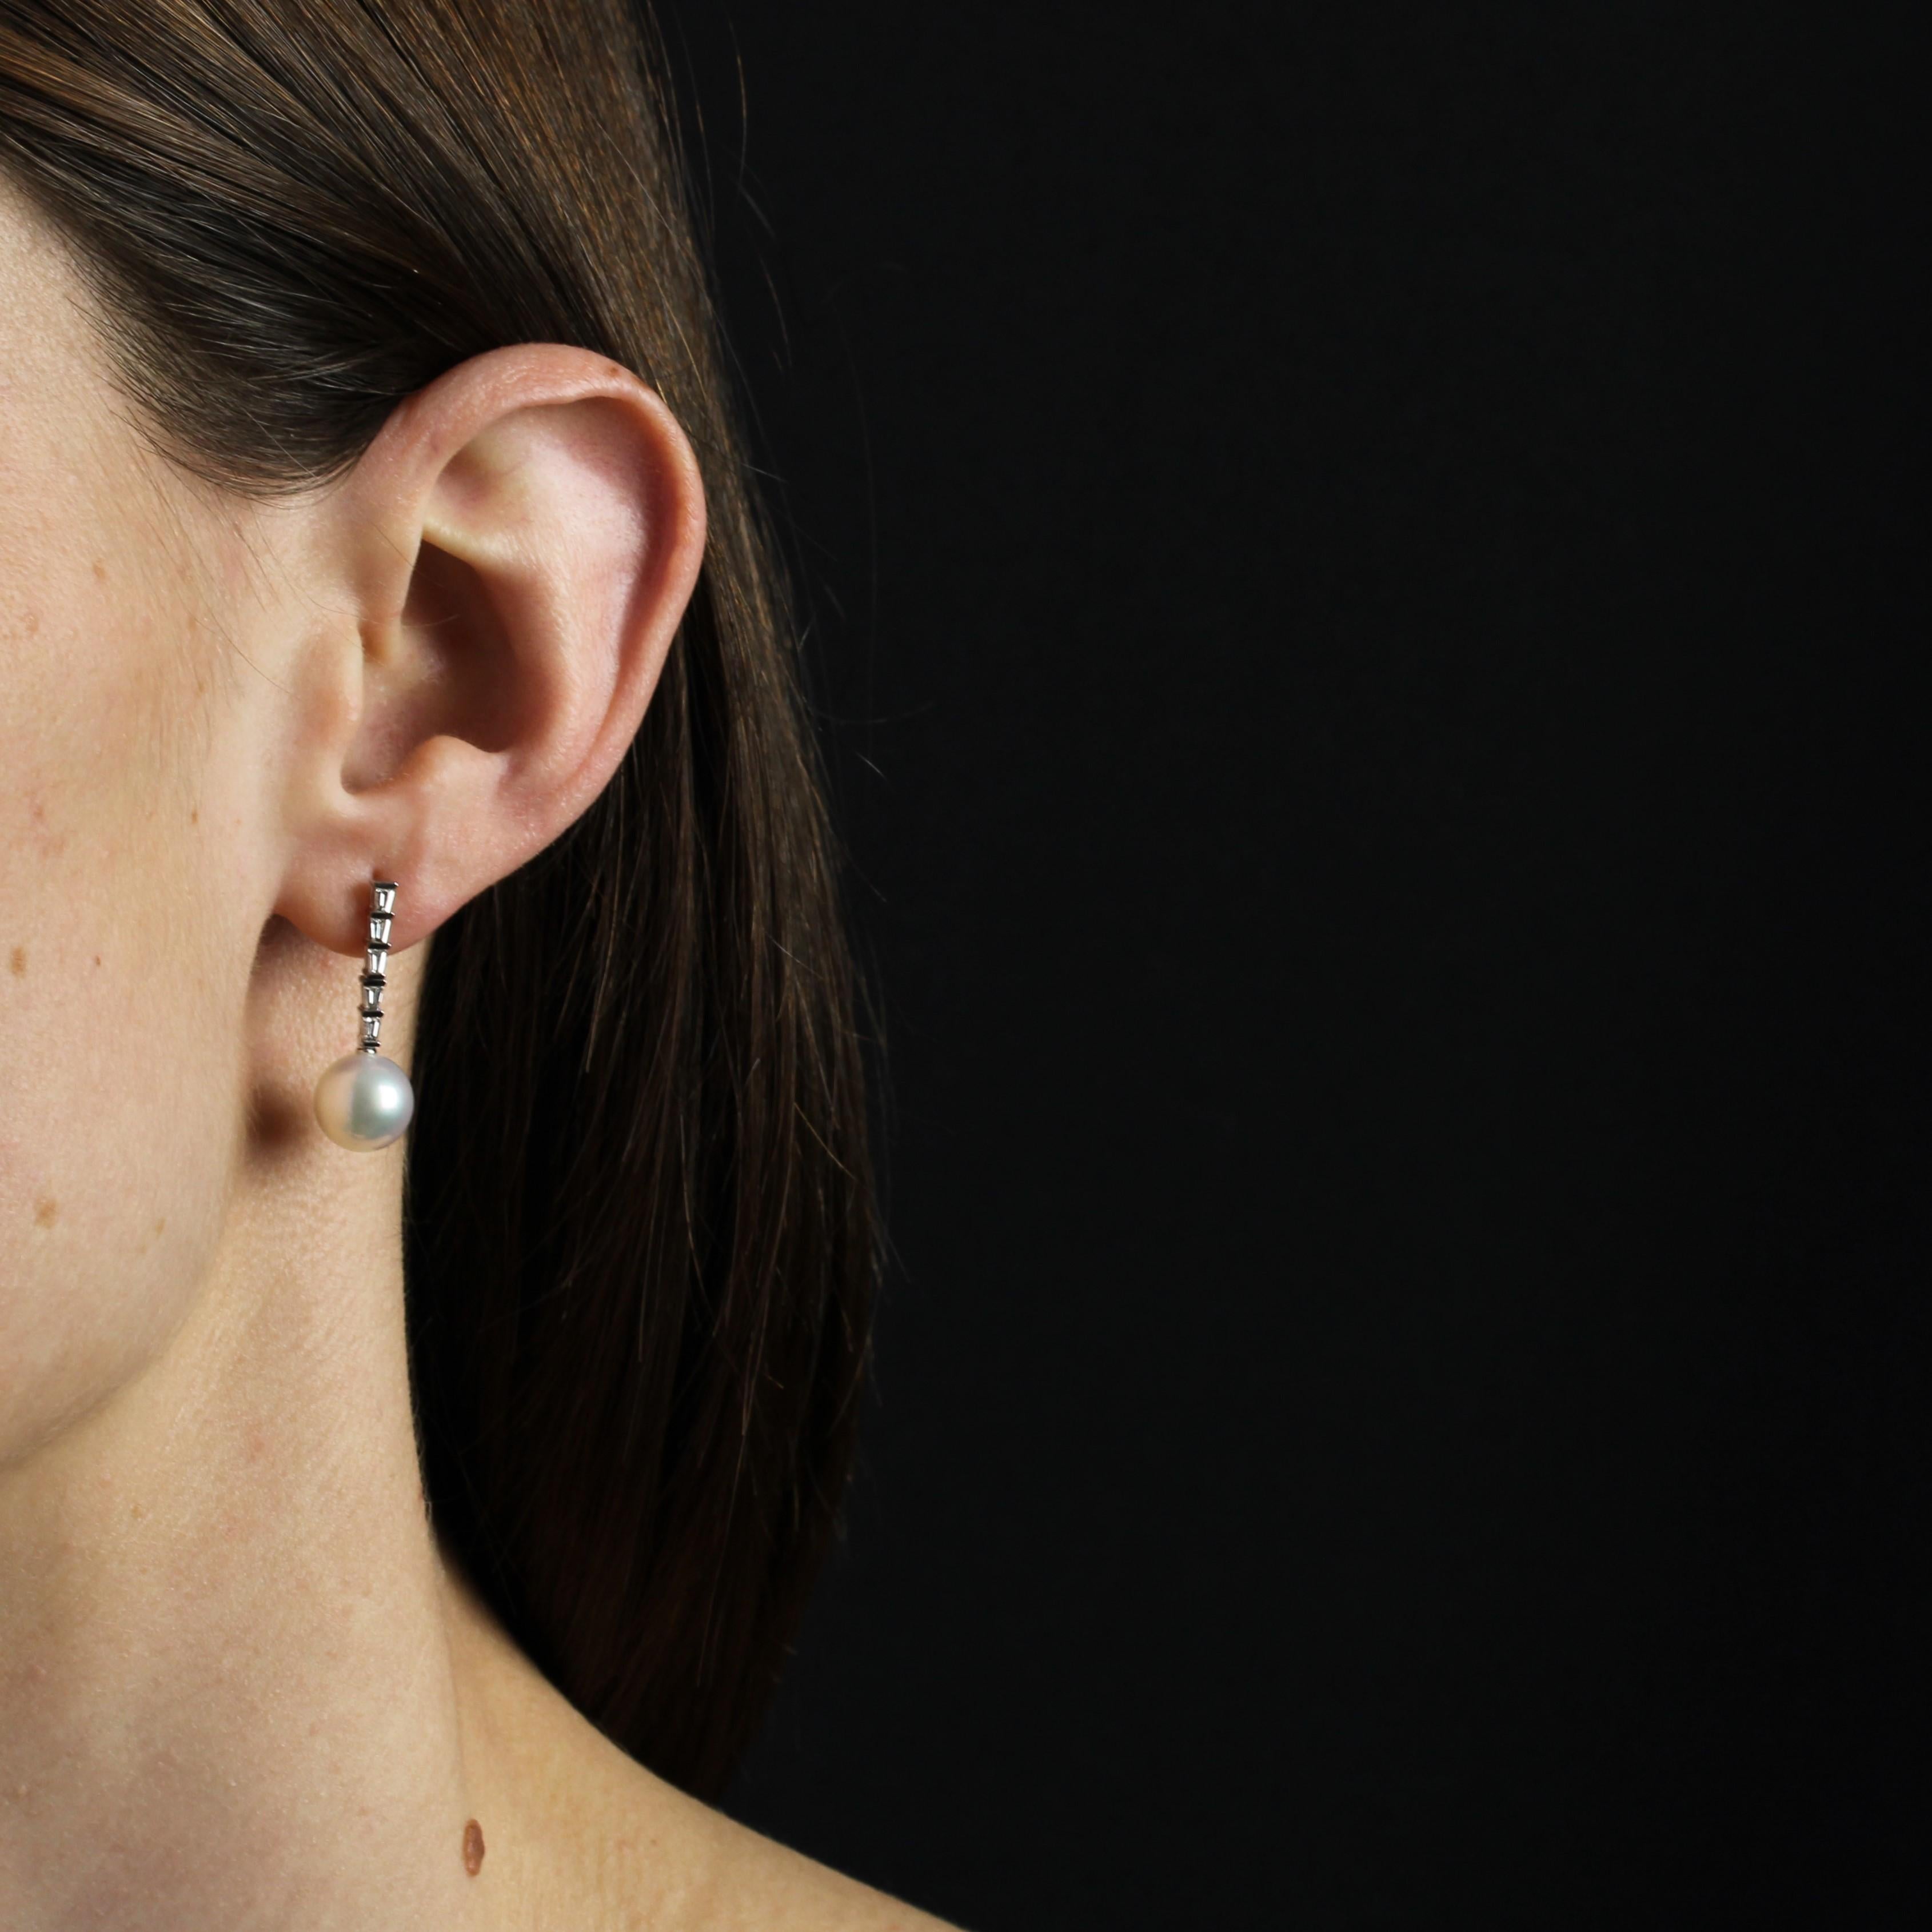 Für gepiercte Ohren.
Ohrringe aus 18 Karat Weißgold.
Diese baumelnden Ohrringe im Art-déco-Stil sind mit einer Reihe von 5 Diamanten im Prinzessinnenschliff besetzt, die eine runde, perlweiße Akoya-Zuchtperle halten. Das Verschlusssystem besteht aus